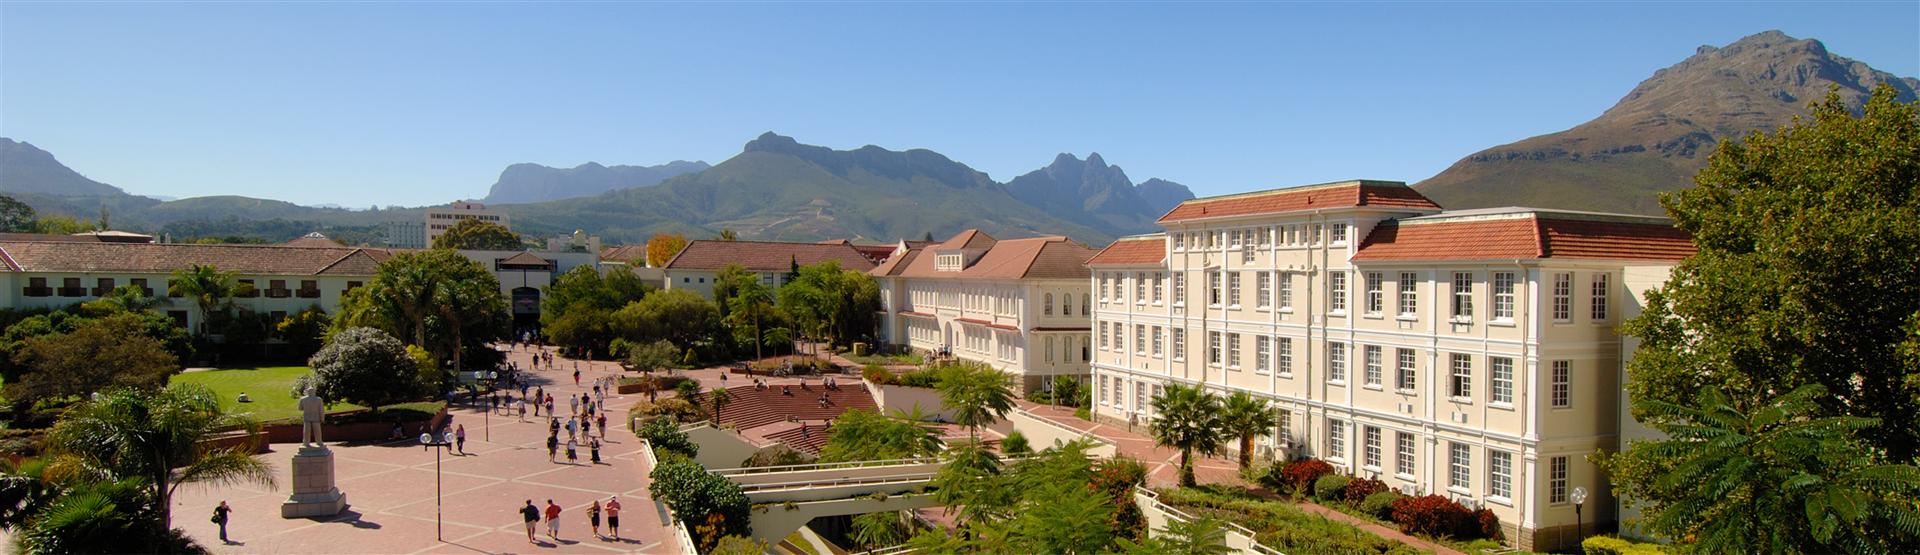 Stellenbosch Campus